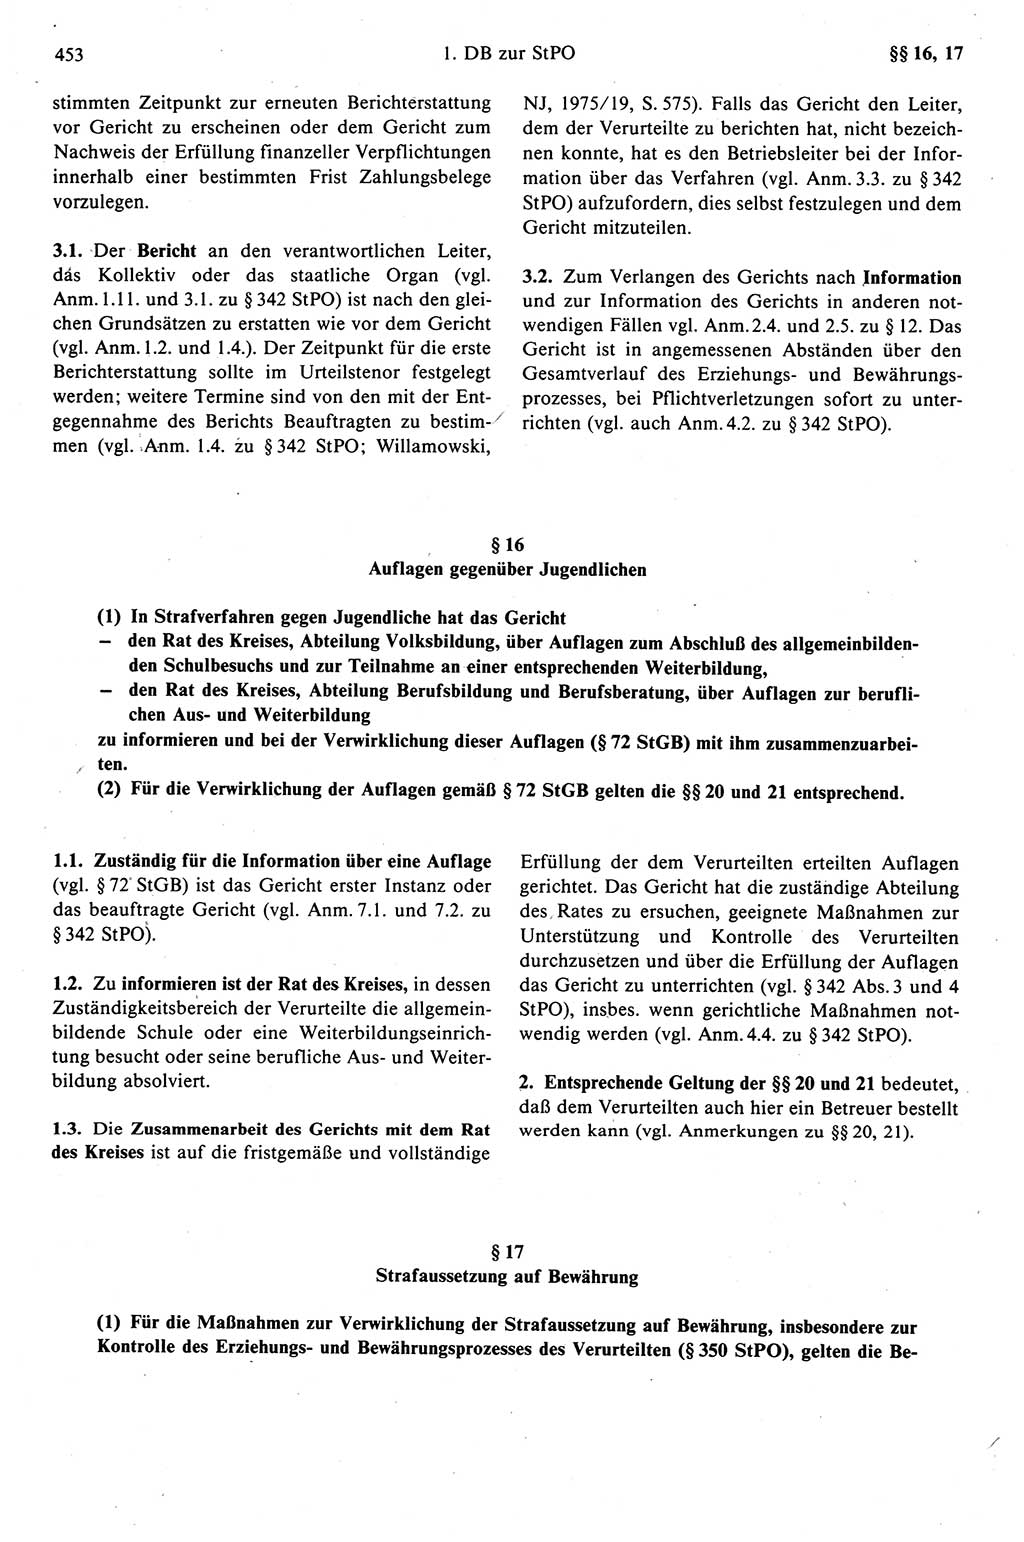 Strafprozeßrecht der DDR (Deutsche Demokratische Republik), Kommentar zur Strafprozeßordnung (StPO) 1989, Seite 453 (Strafprozeßr. DDR Komm. StPO 1989, S. 453)